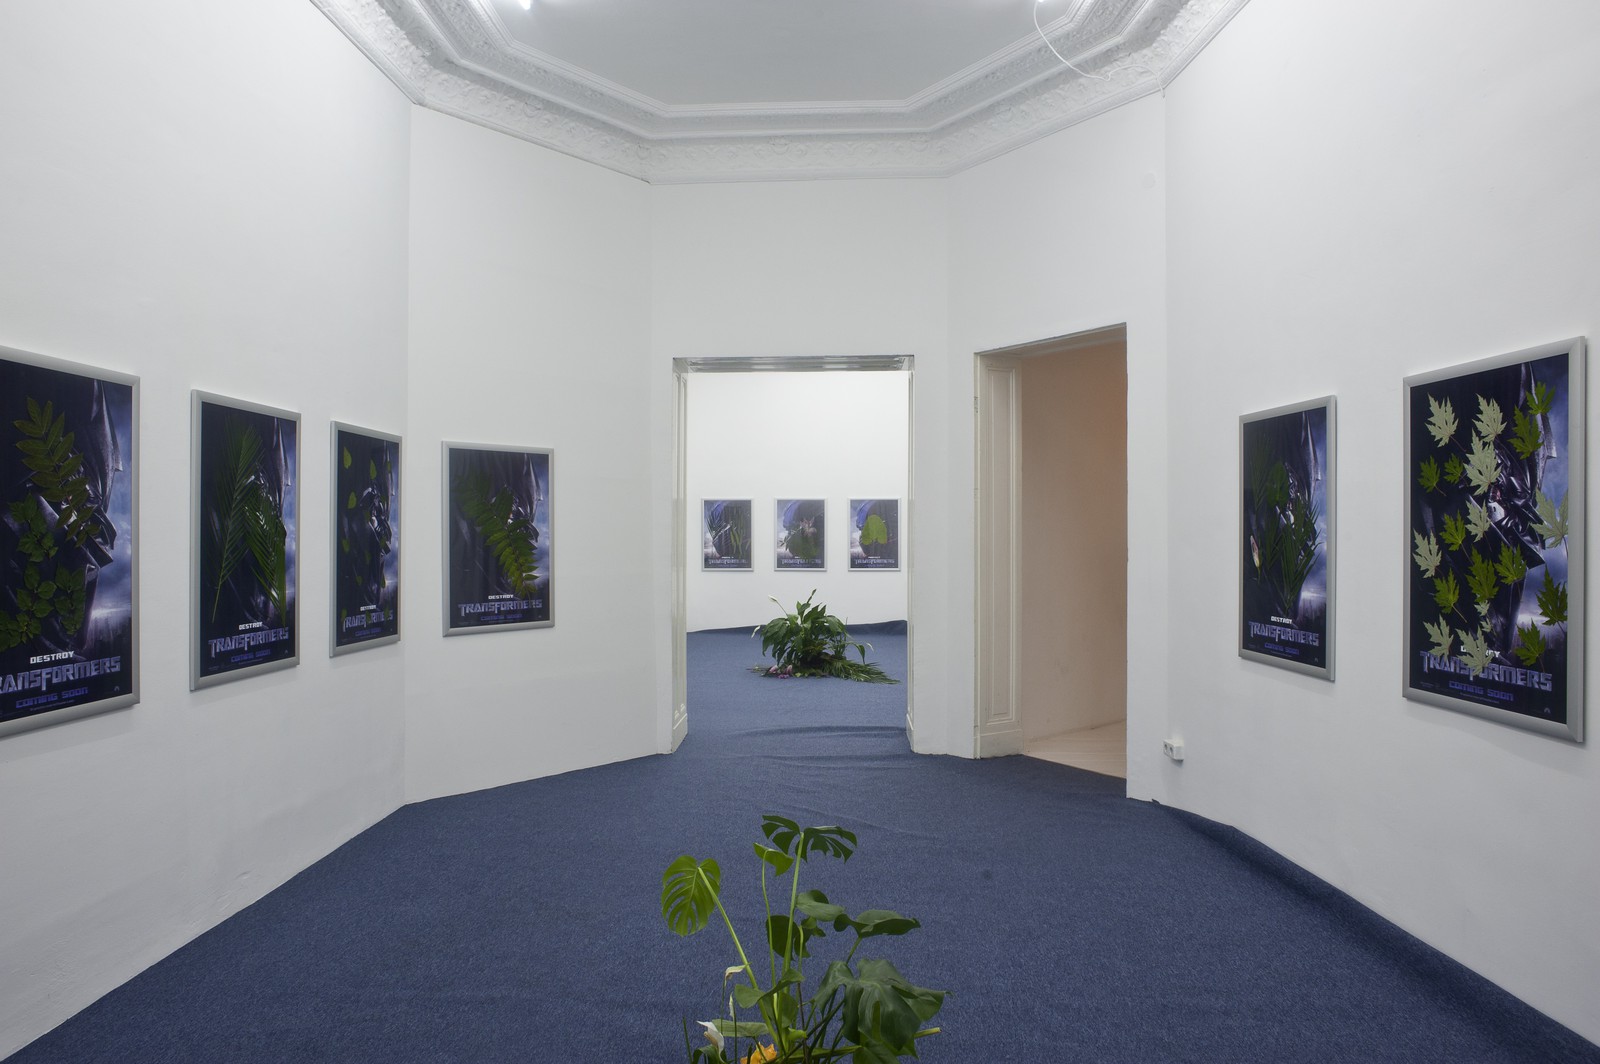 Installation view, Mainstream, Société, Berlin, 2011